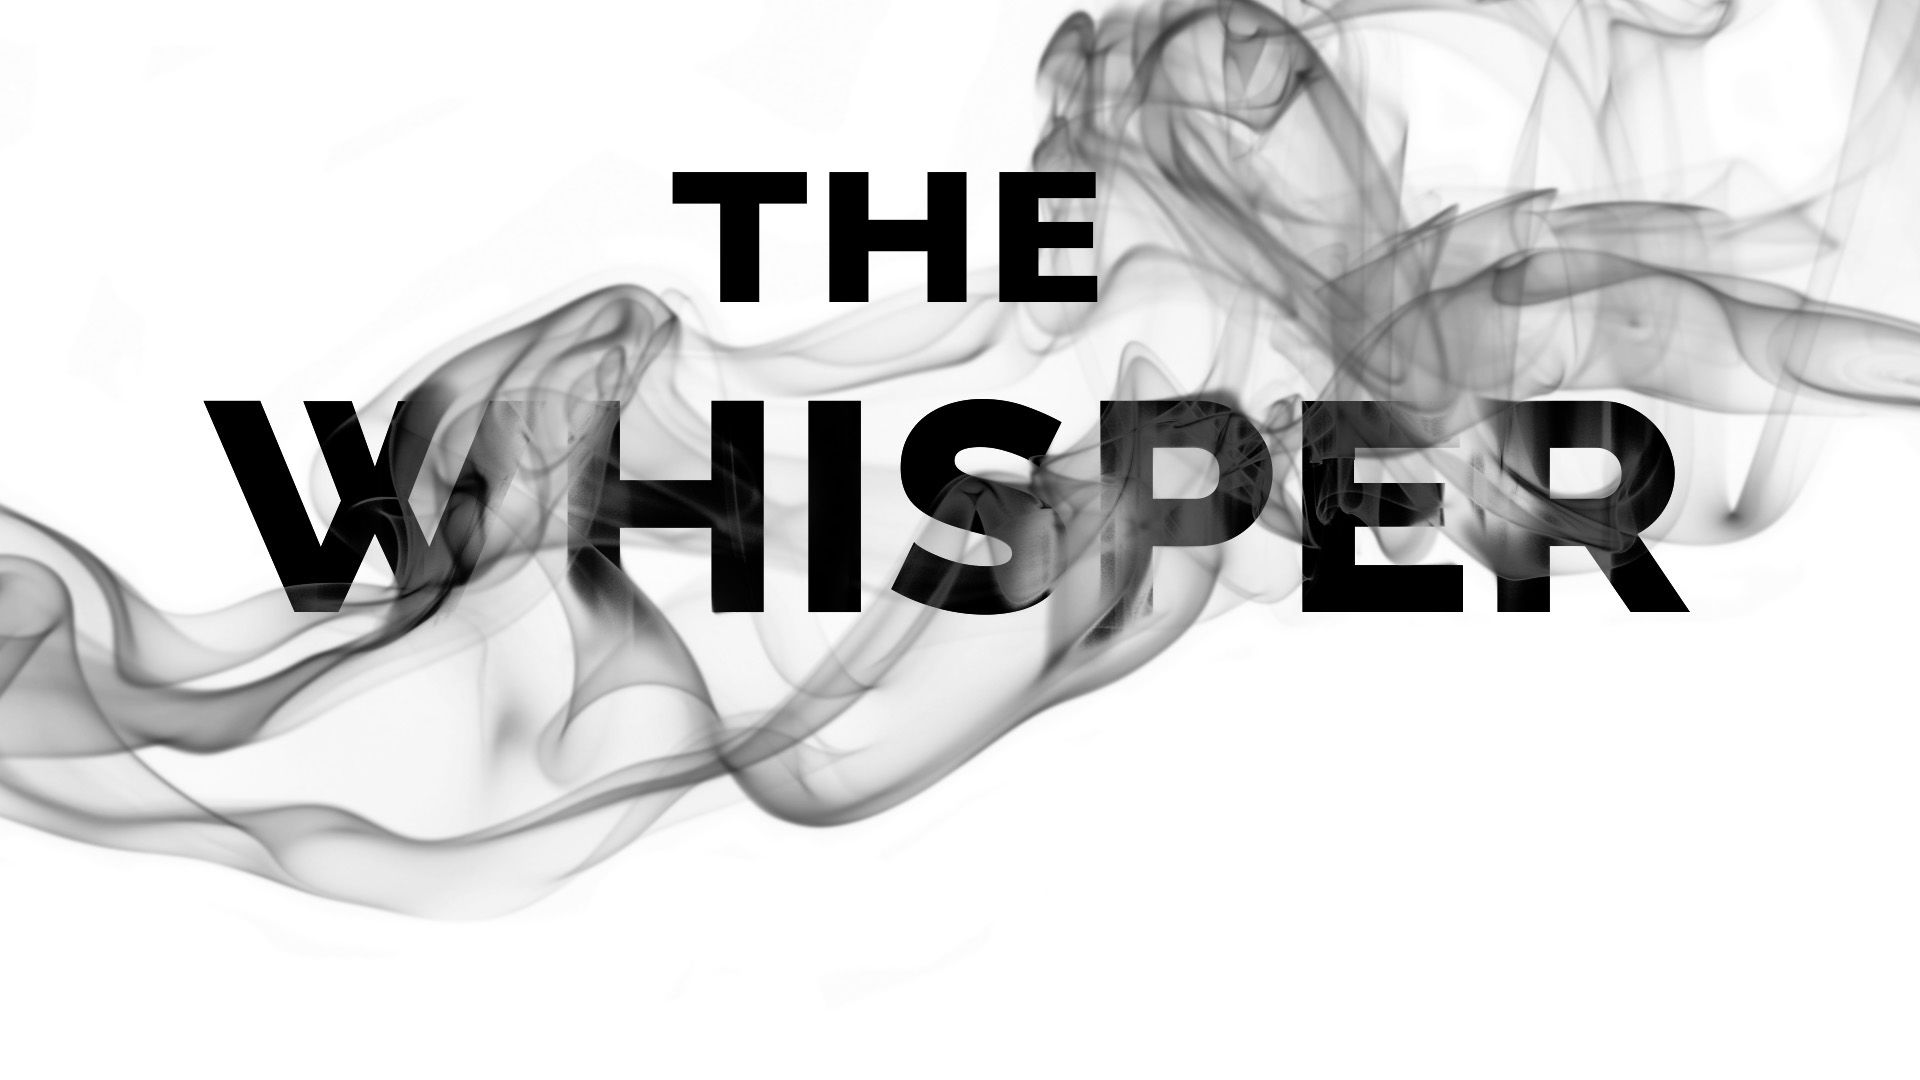 THE WHISPER